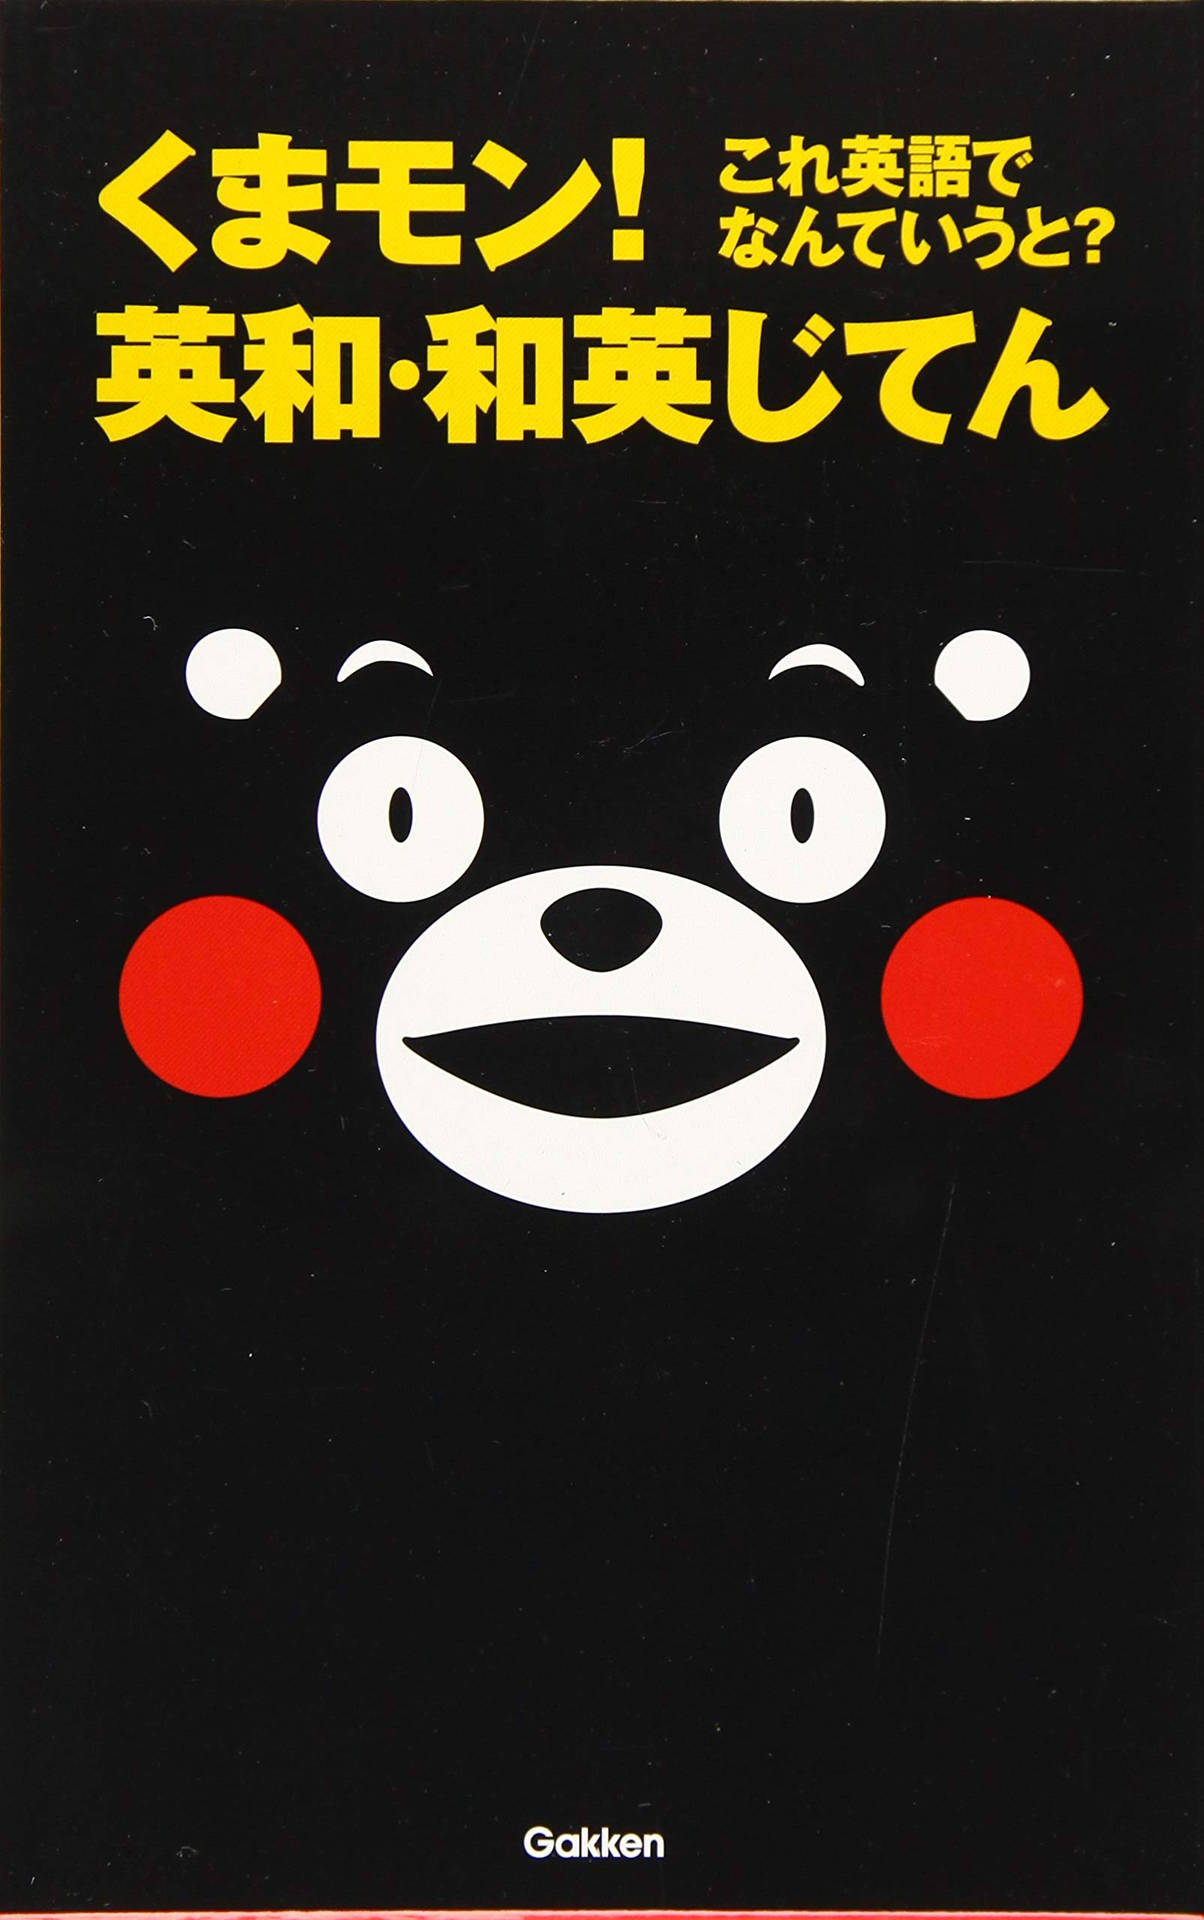 Japanese Kumamon Character Background